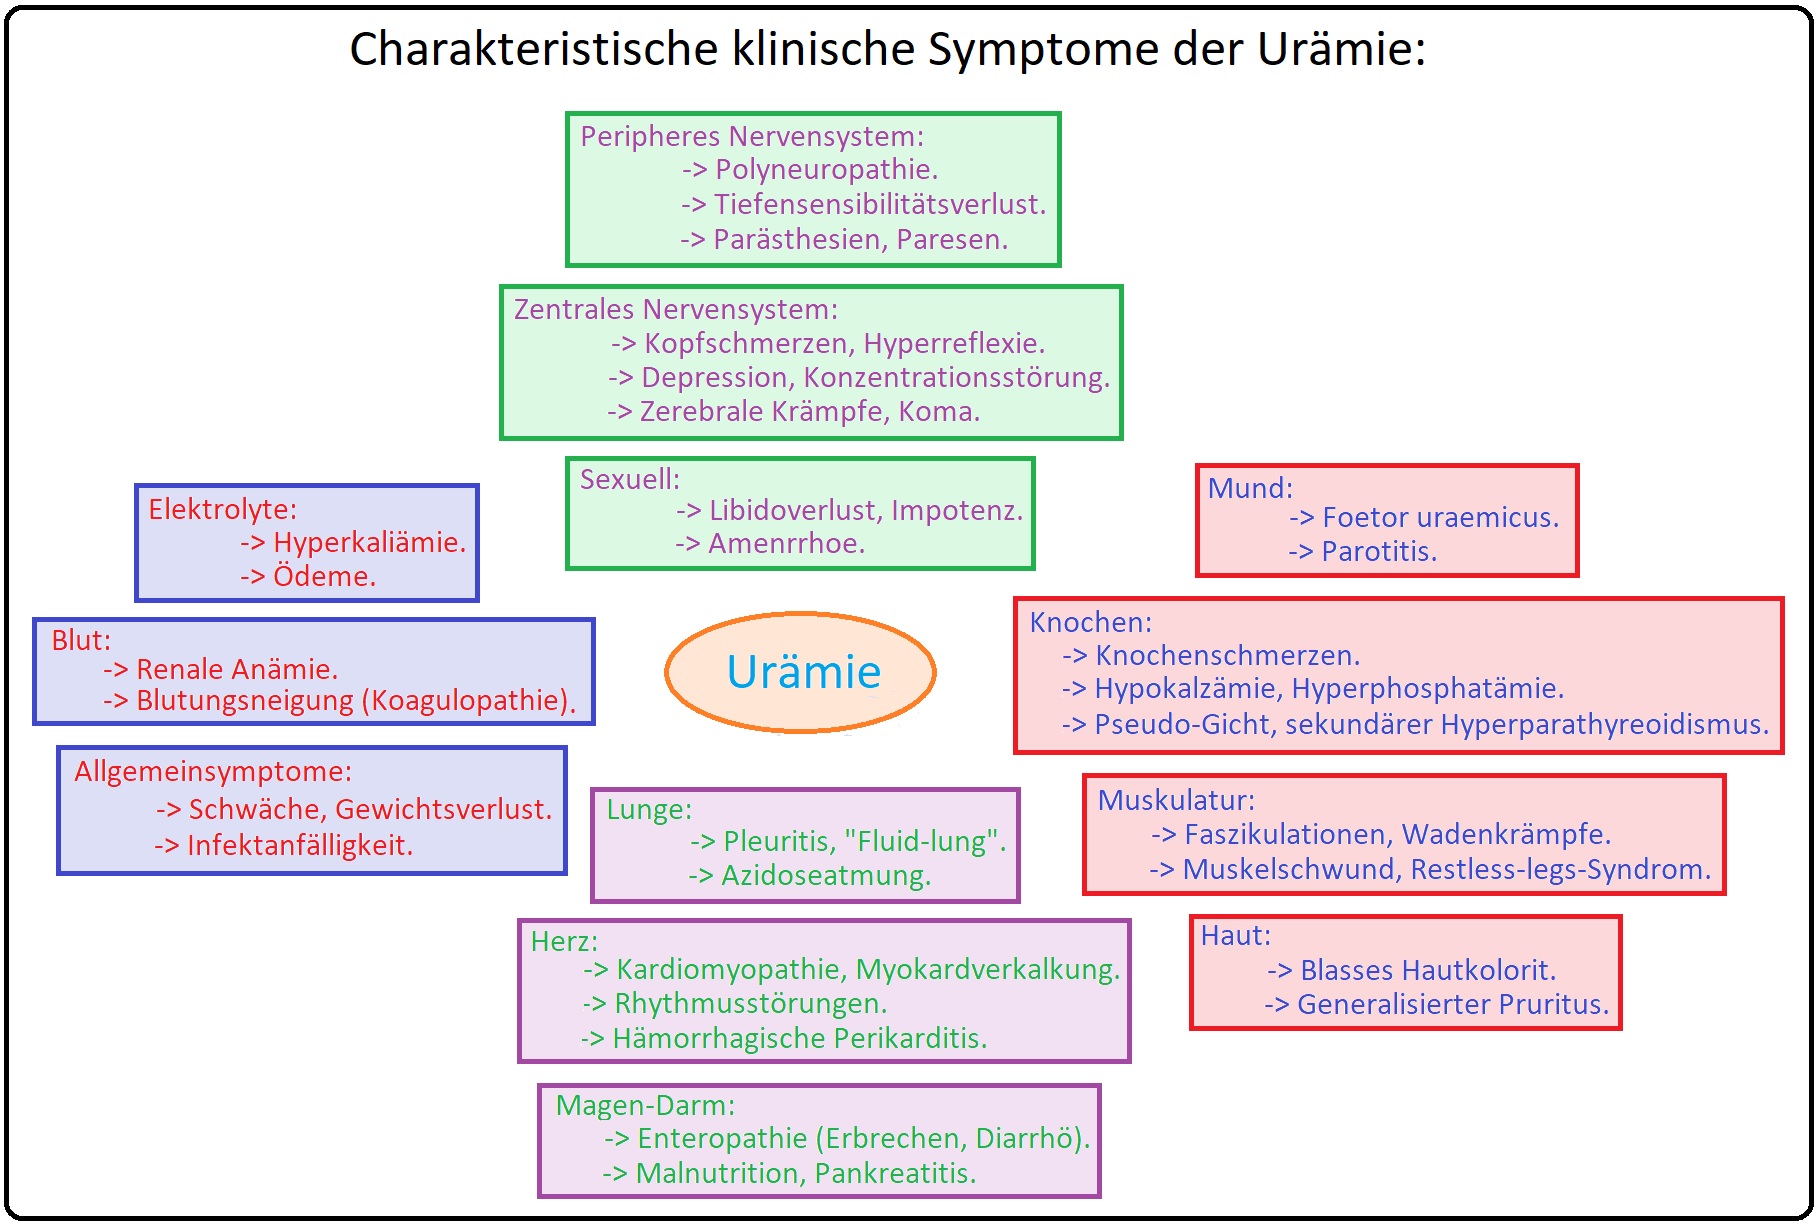 821 Charakteristische klinische Symptome der Urämie